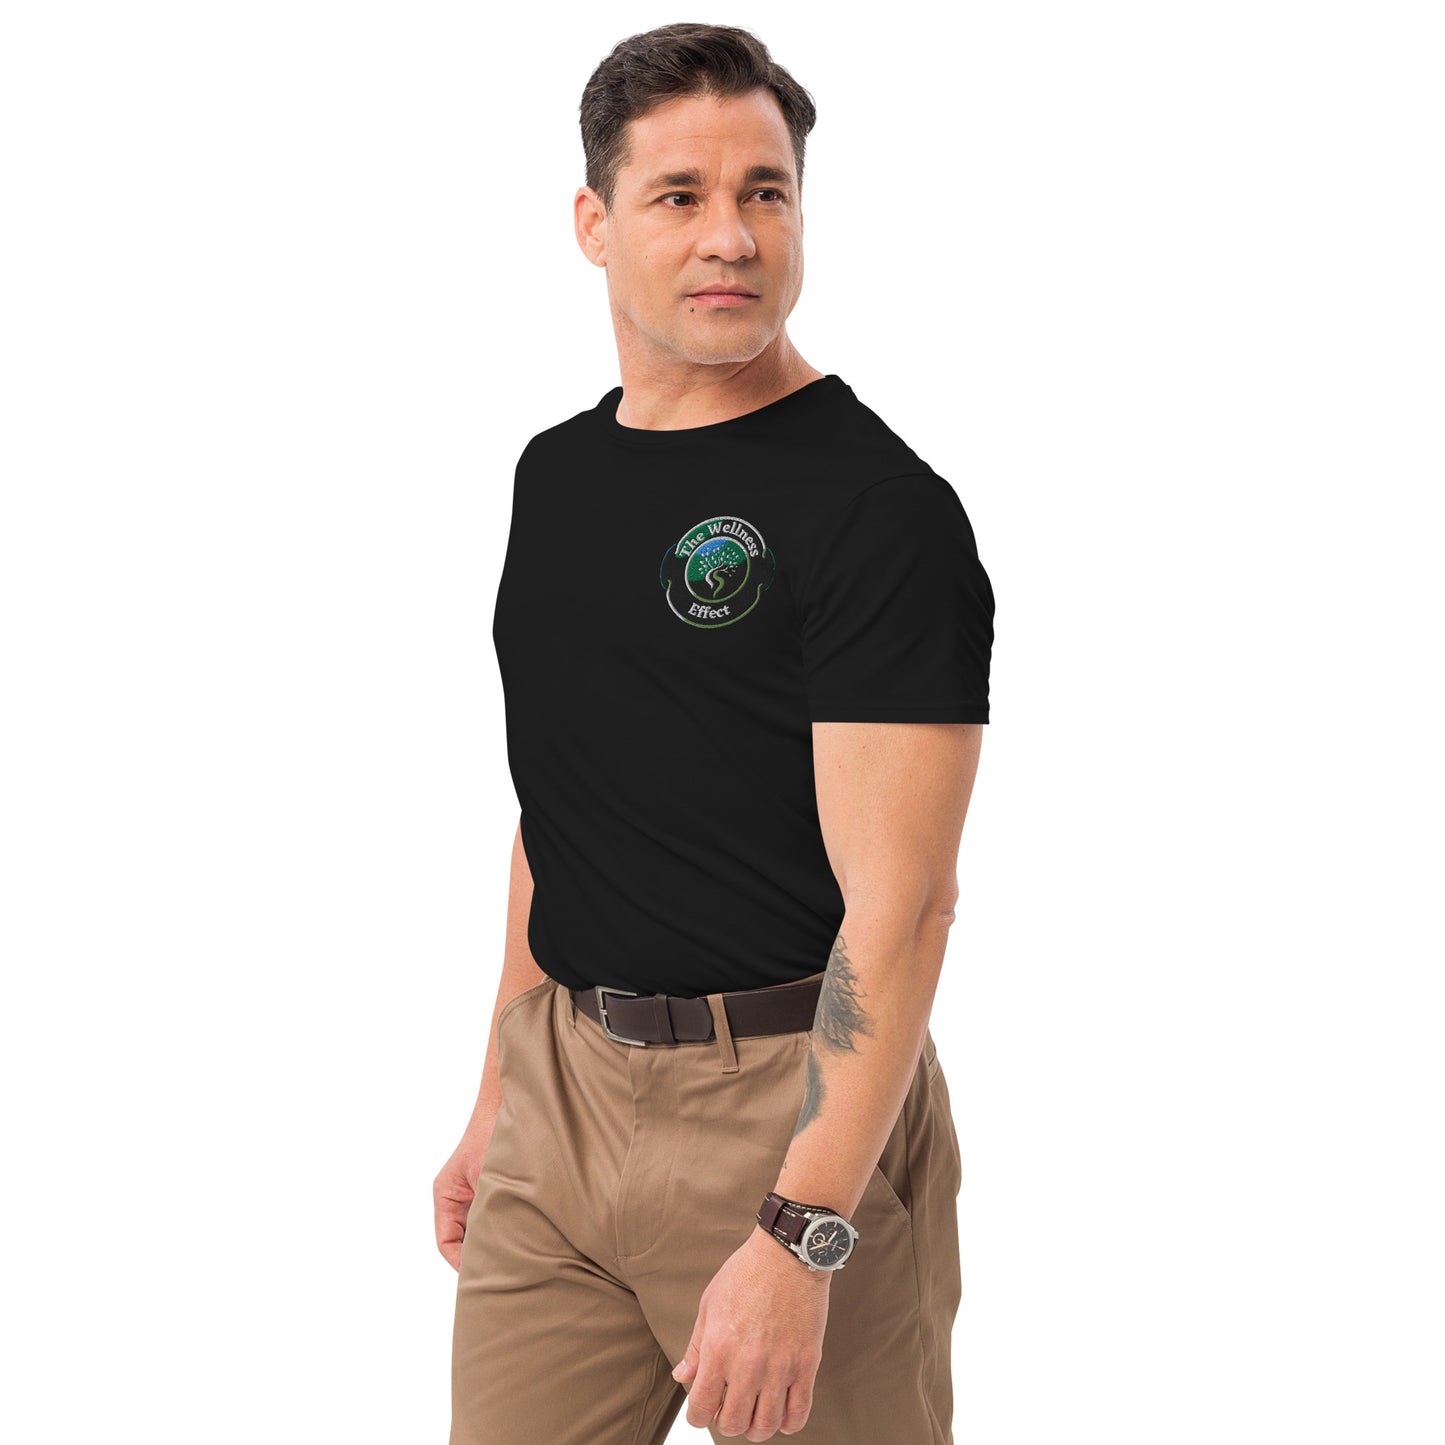 The Wellness Effect Men's premium cotton t-shirt